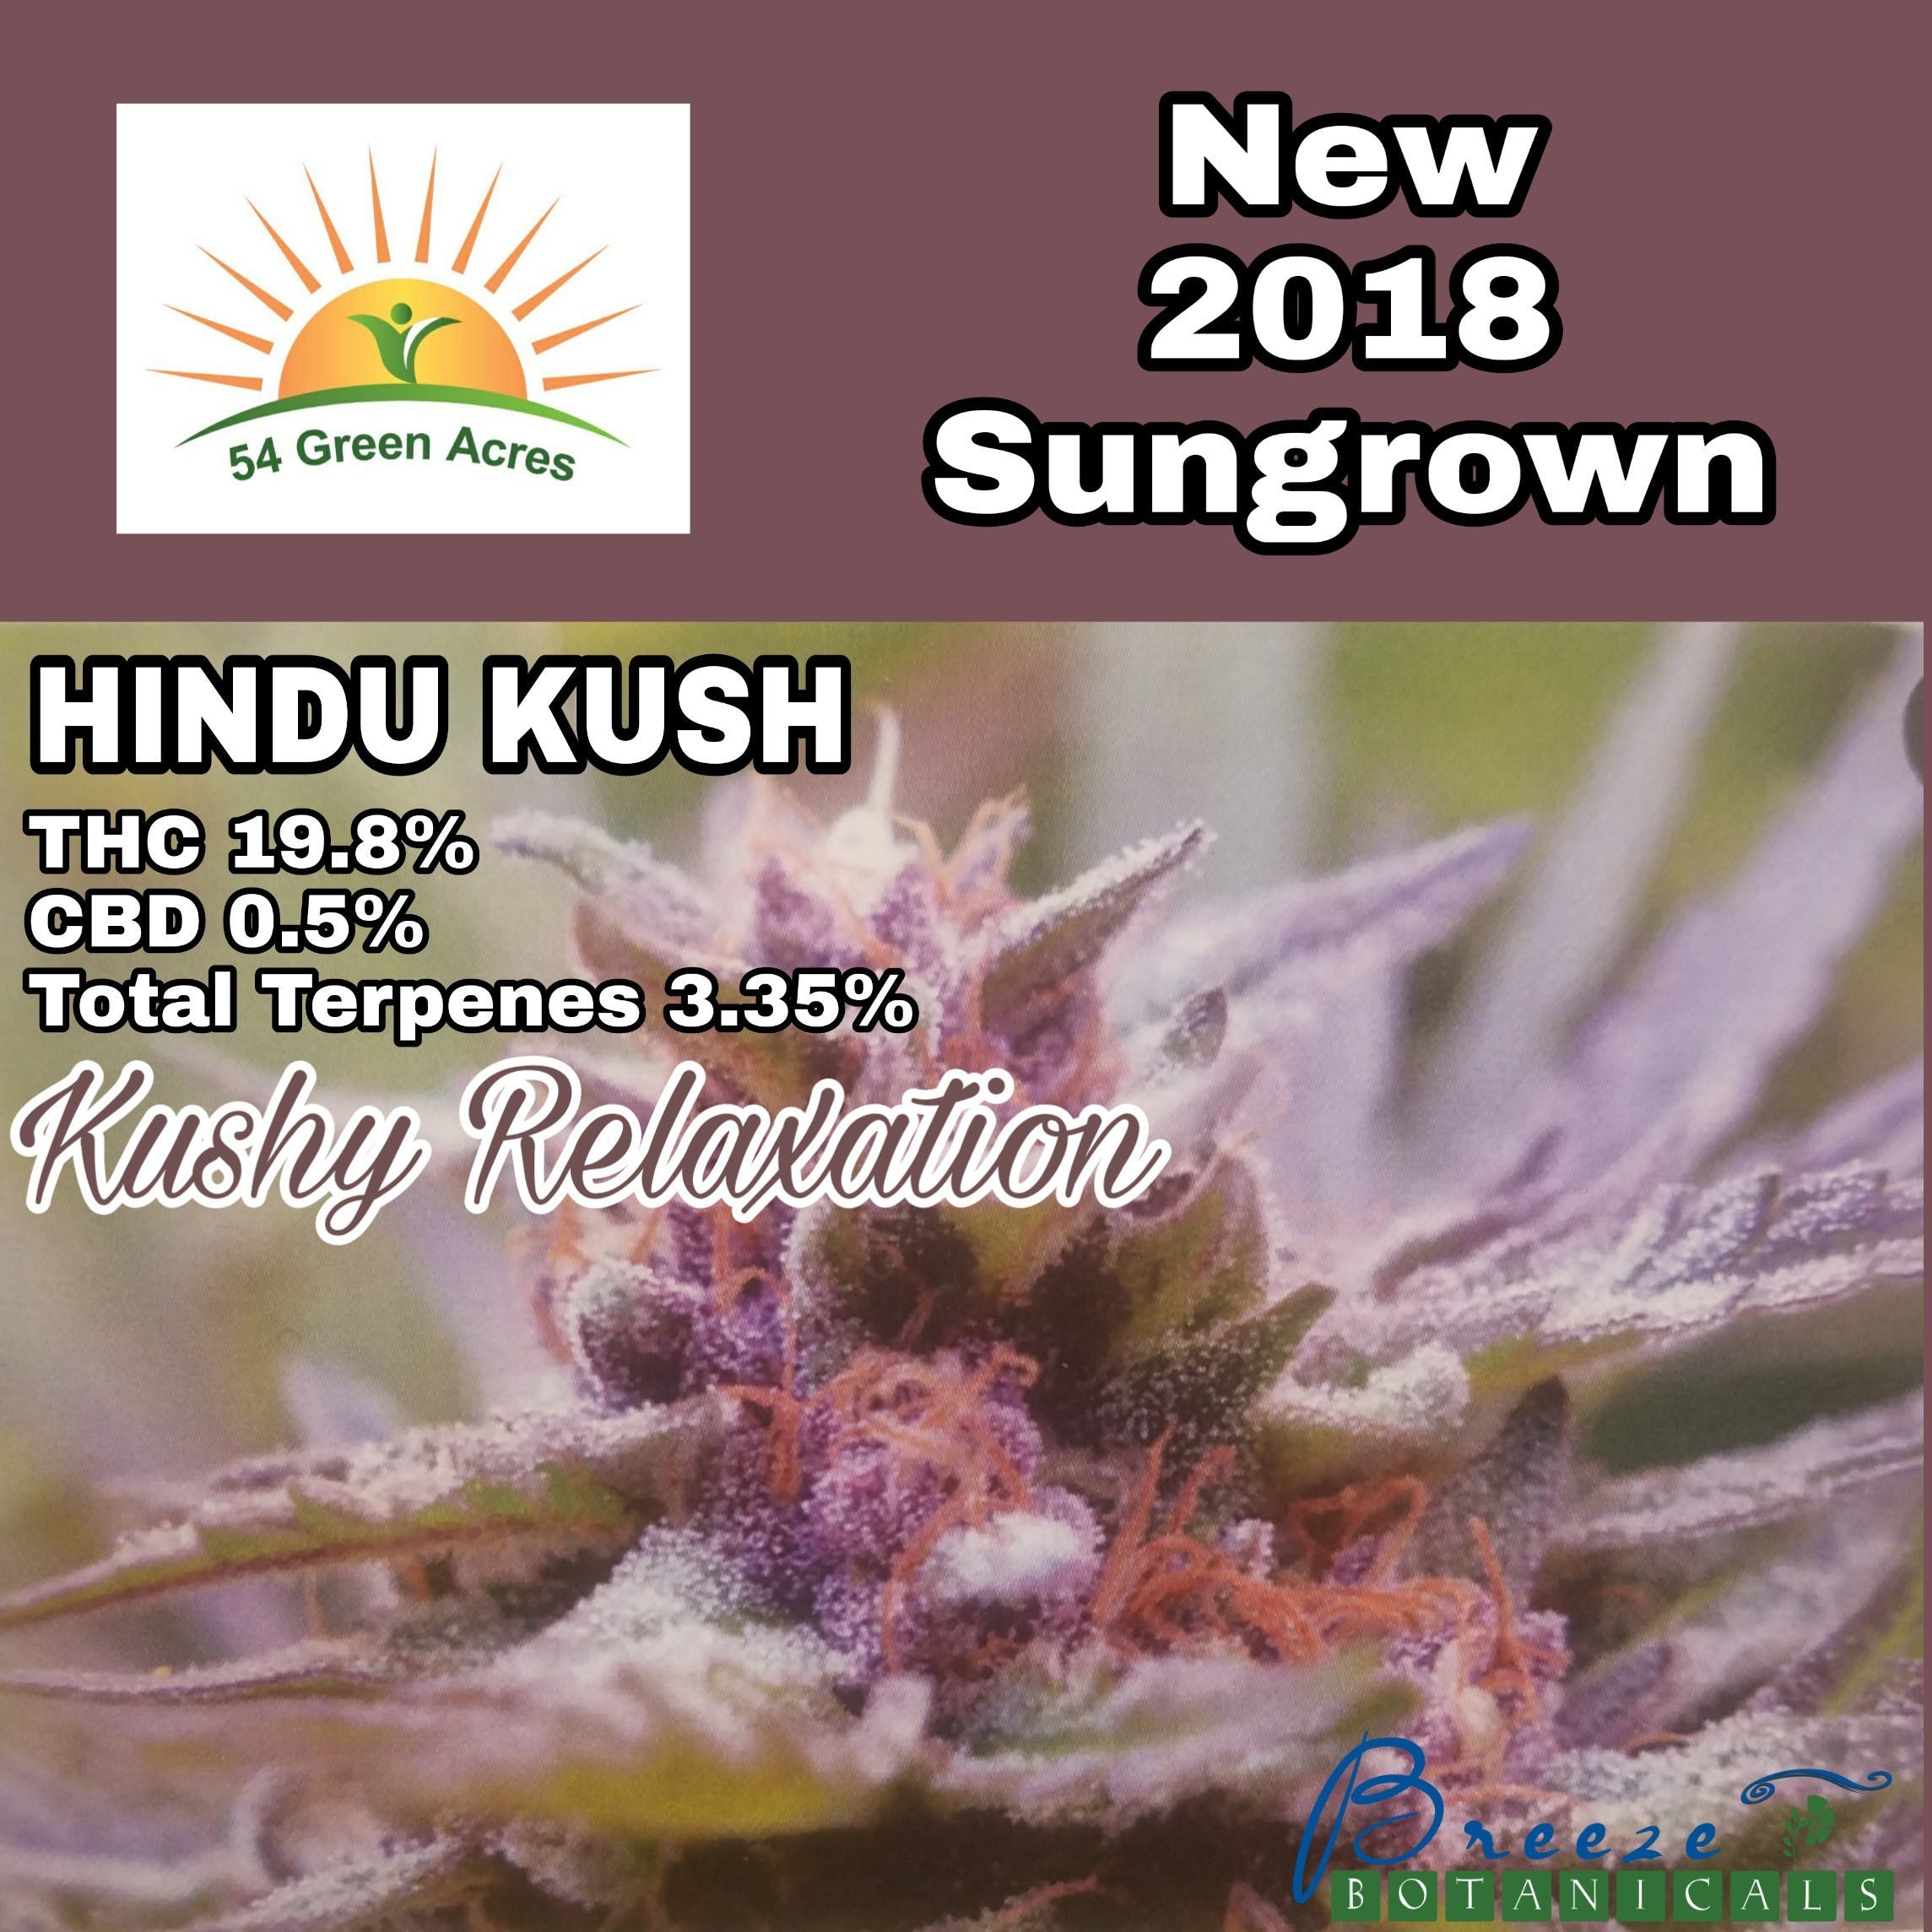 Hindu Kush Sungrown - 54 Green Acres